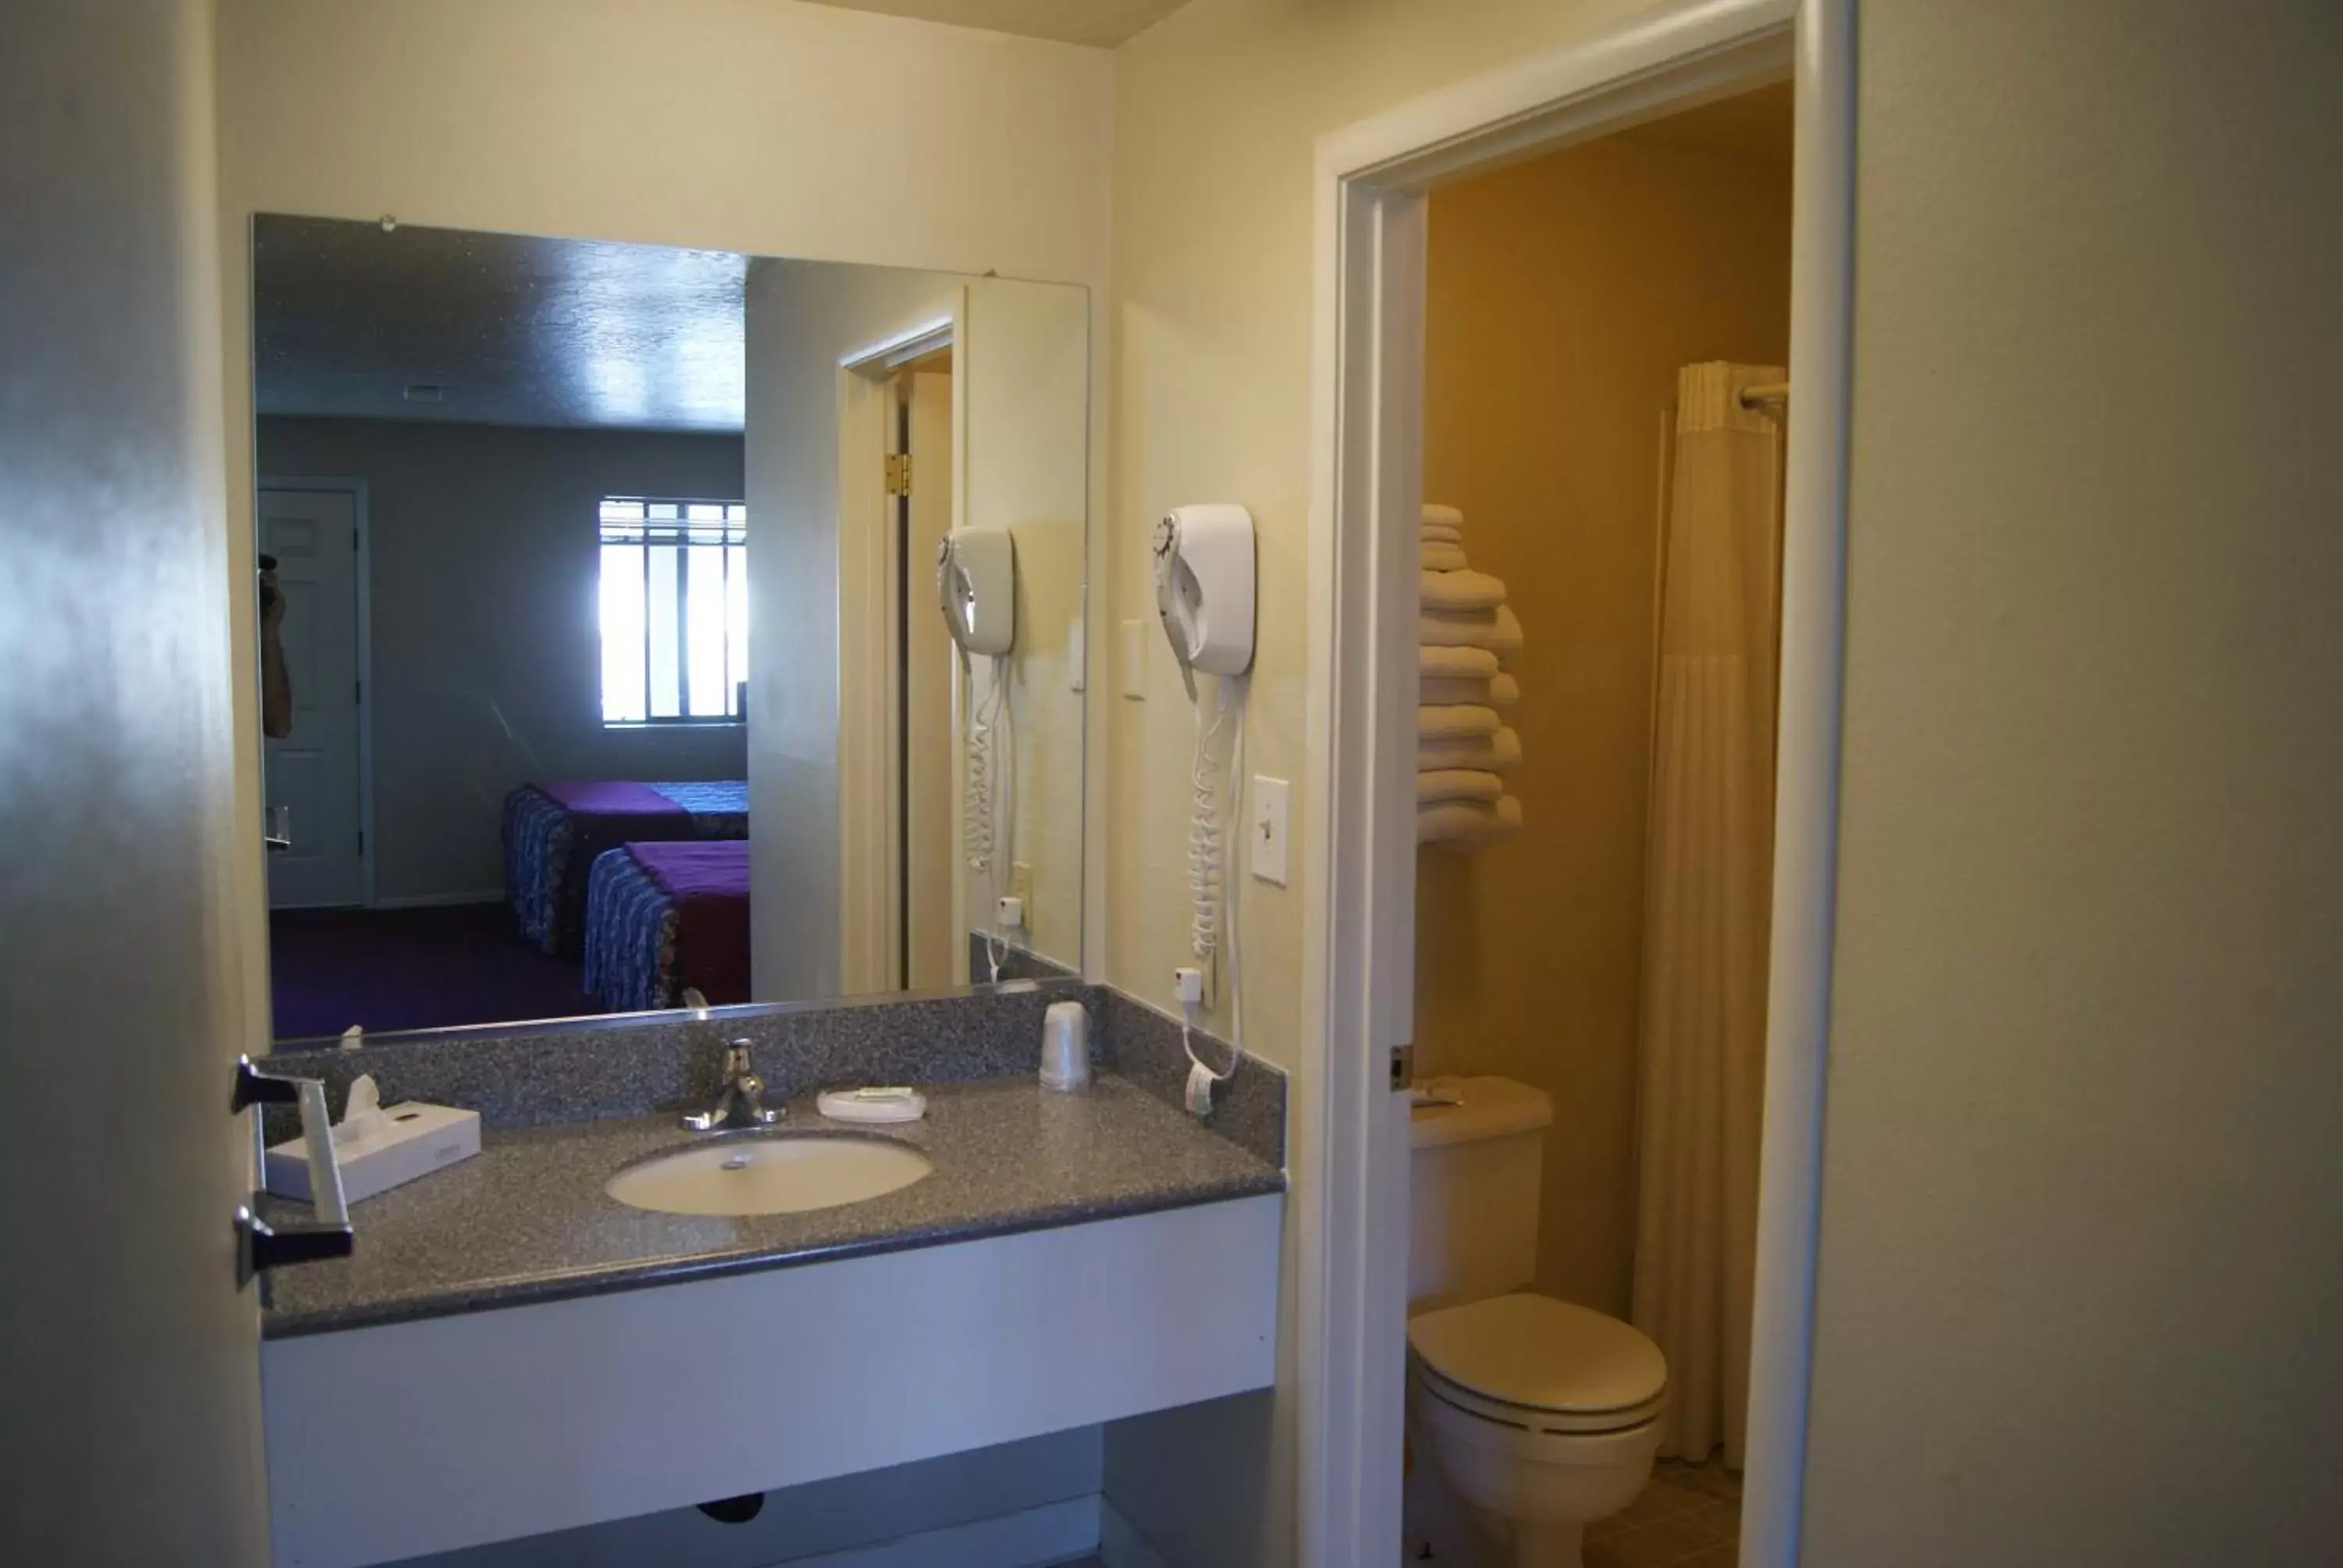 Bathroom in Travelers Motel